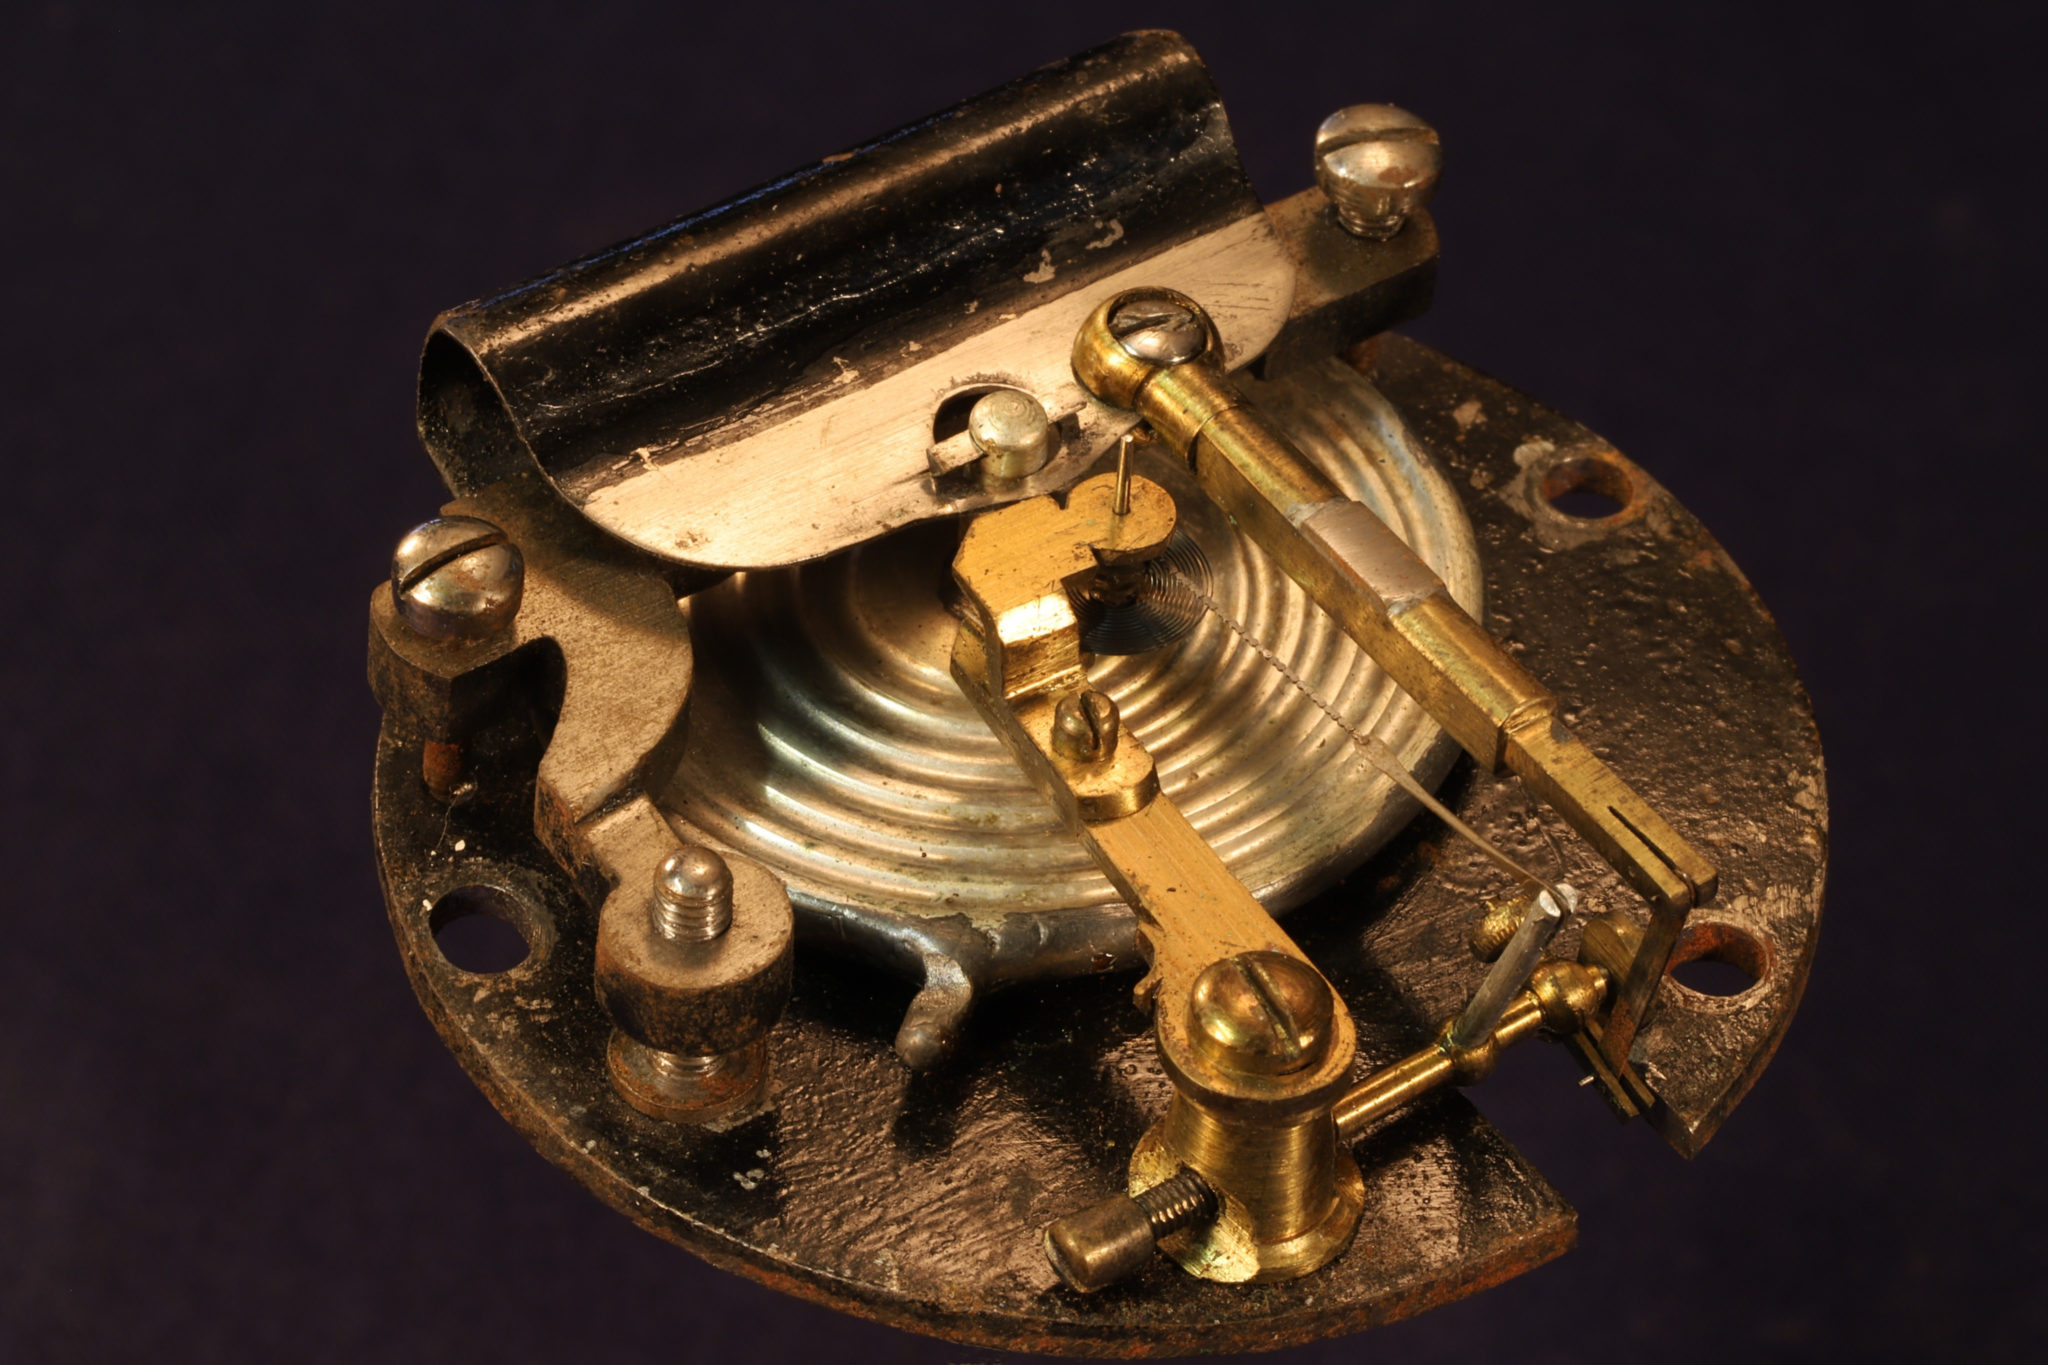 Image of Negretti & Zambra Pocket Barometer No 17538